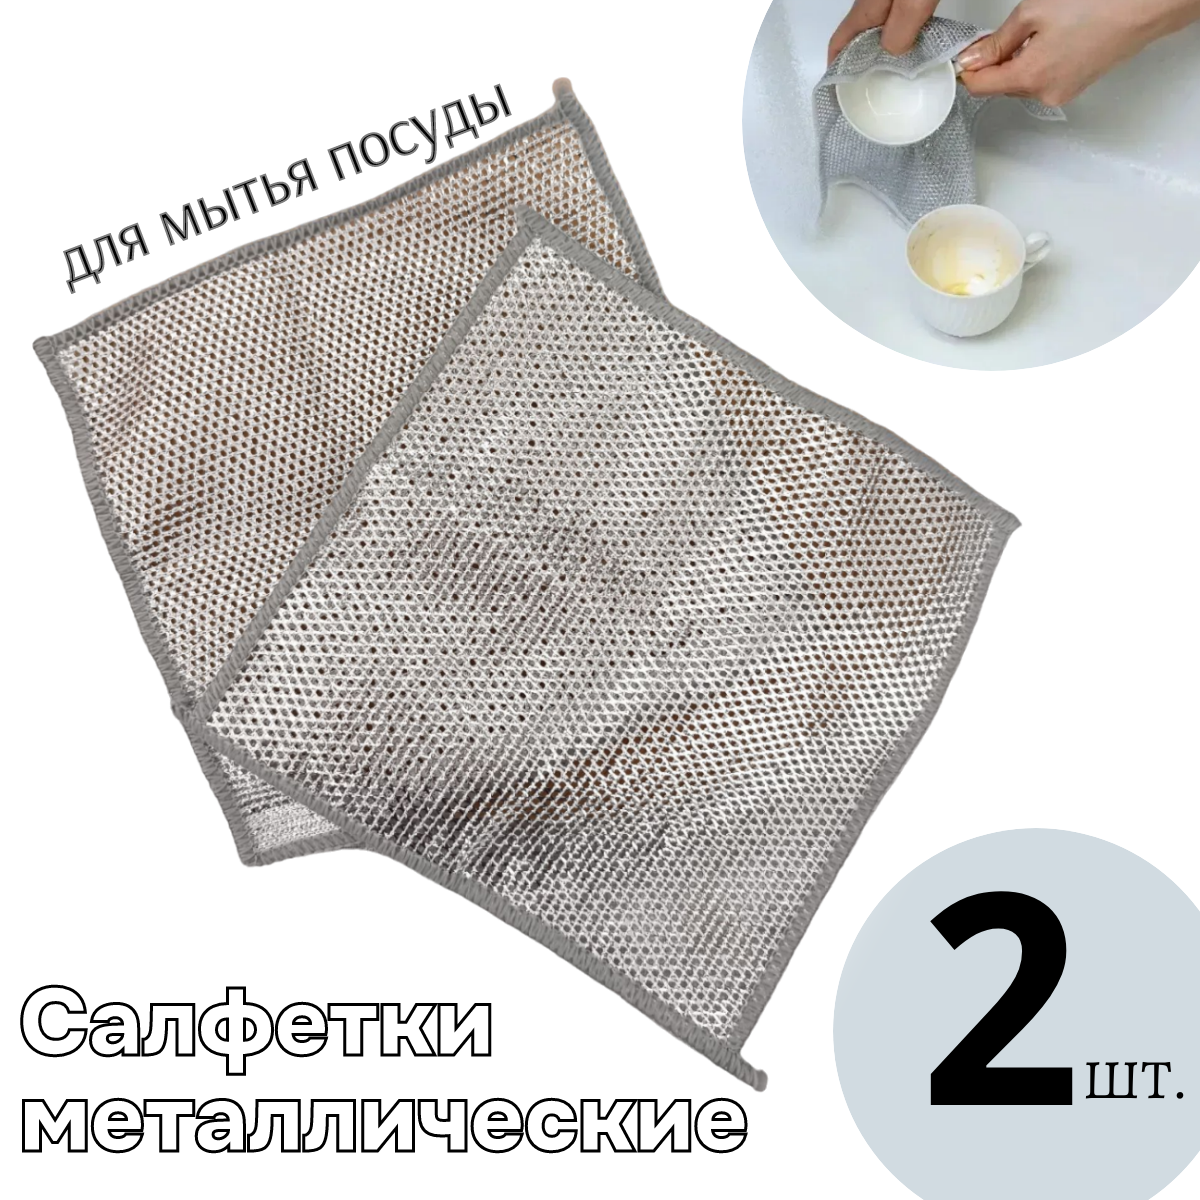 Узелковая сетка для мытья посуды с металловолокном, салфетка узелковая для мытья посуды, 2шт